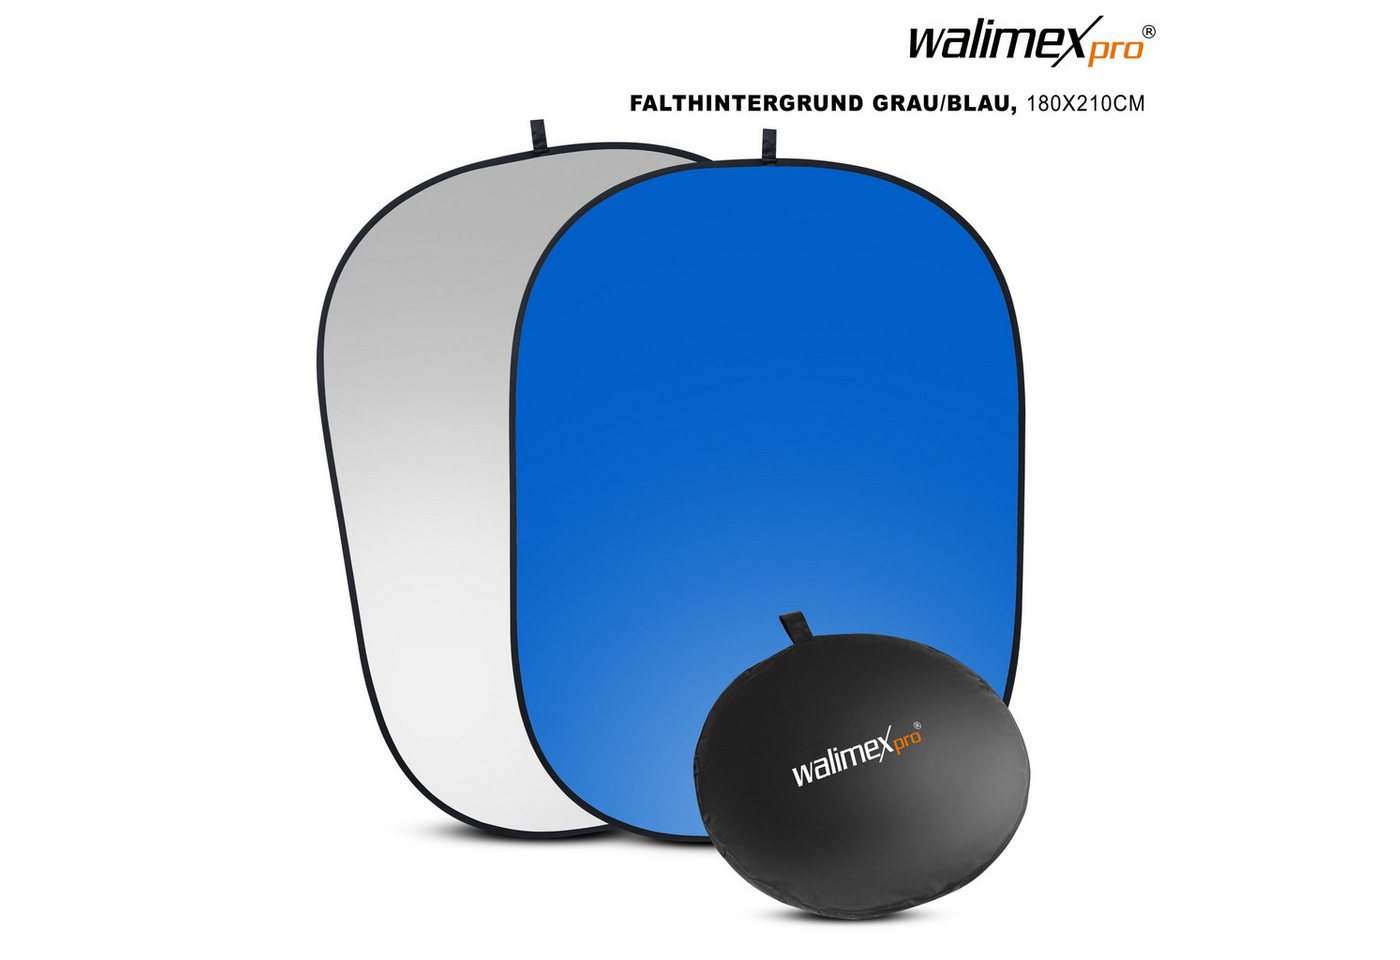 Walimex Pro Falthintergrund 2in1 Falthintergrund grau/blau, 180x210cm von Walimex Pro